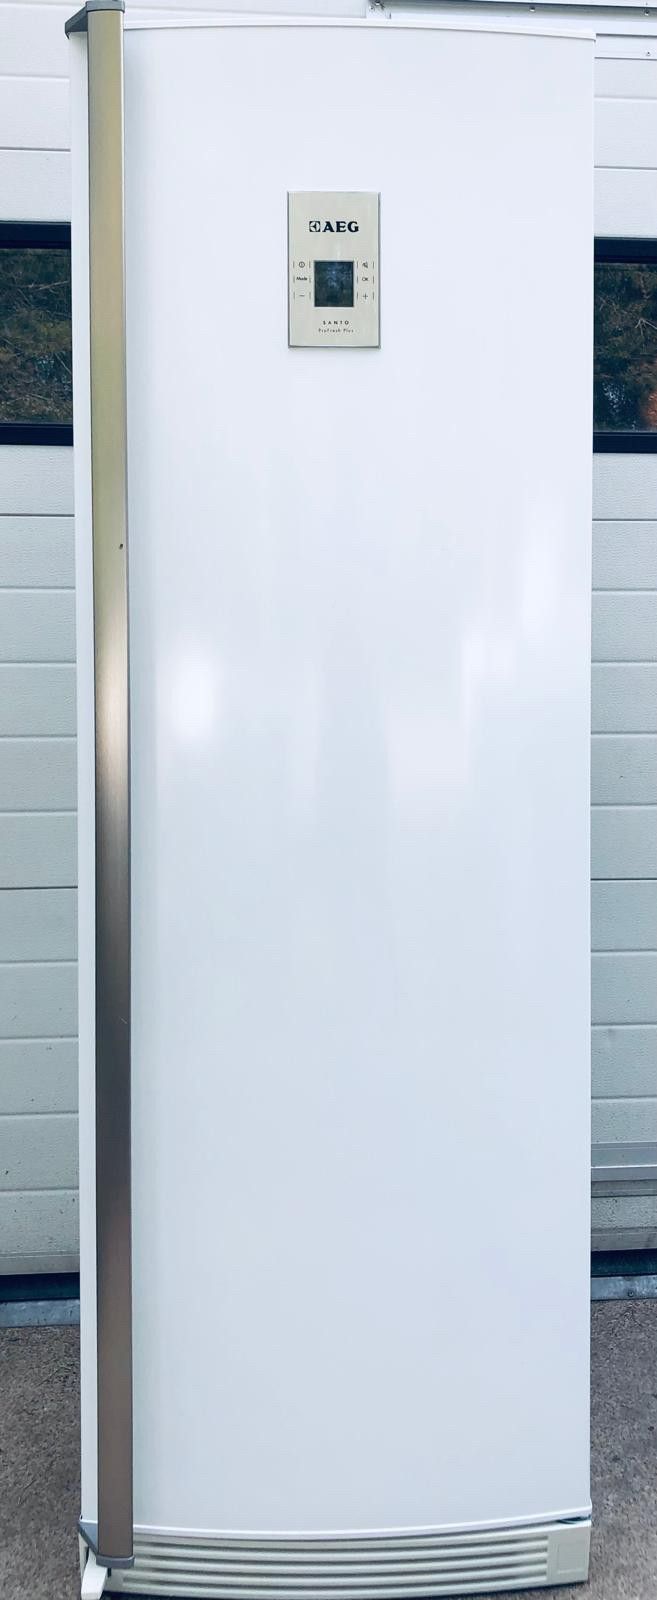 AEG jääkaappi, korkea (180cm)